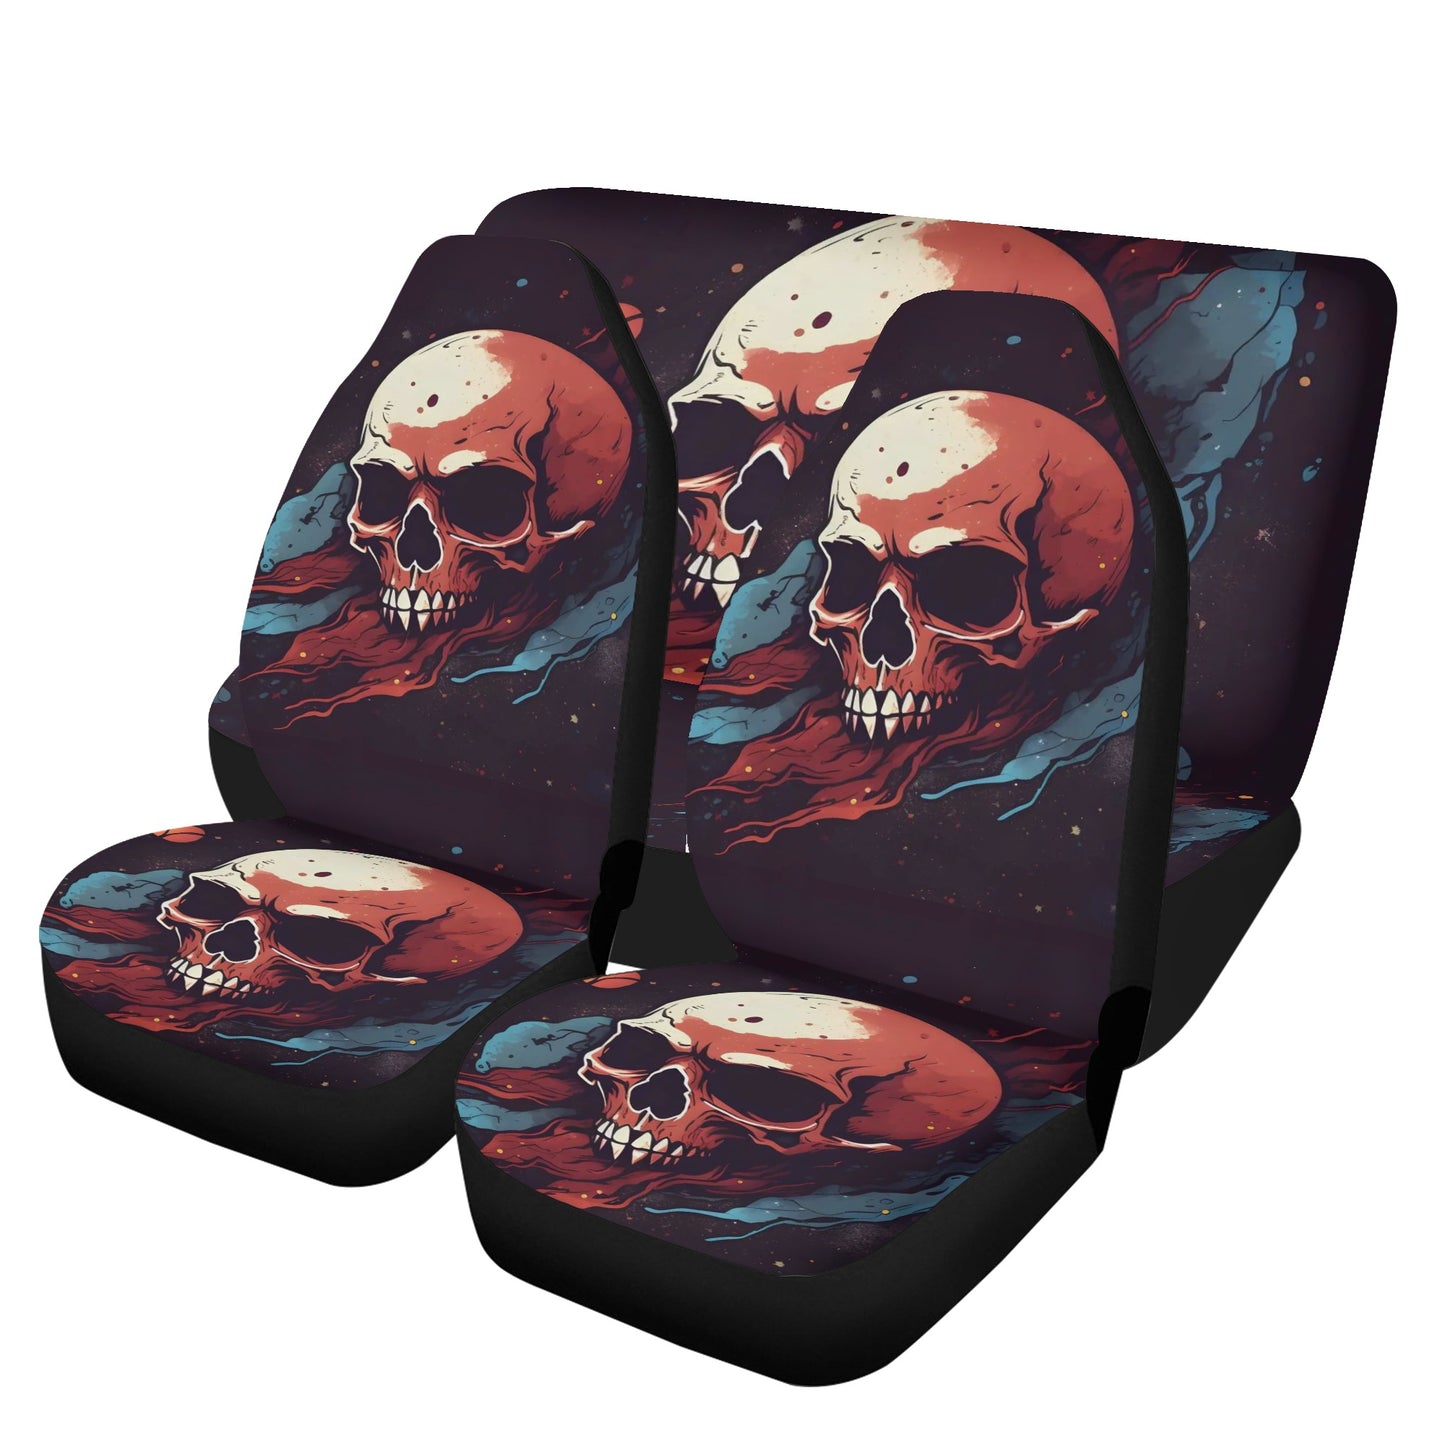 Skeleton slip-on seat covers, biker skull floor mat for car, punisher skull rug for car, biker skull slip-on seat covers, flame skull front